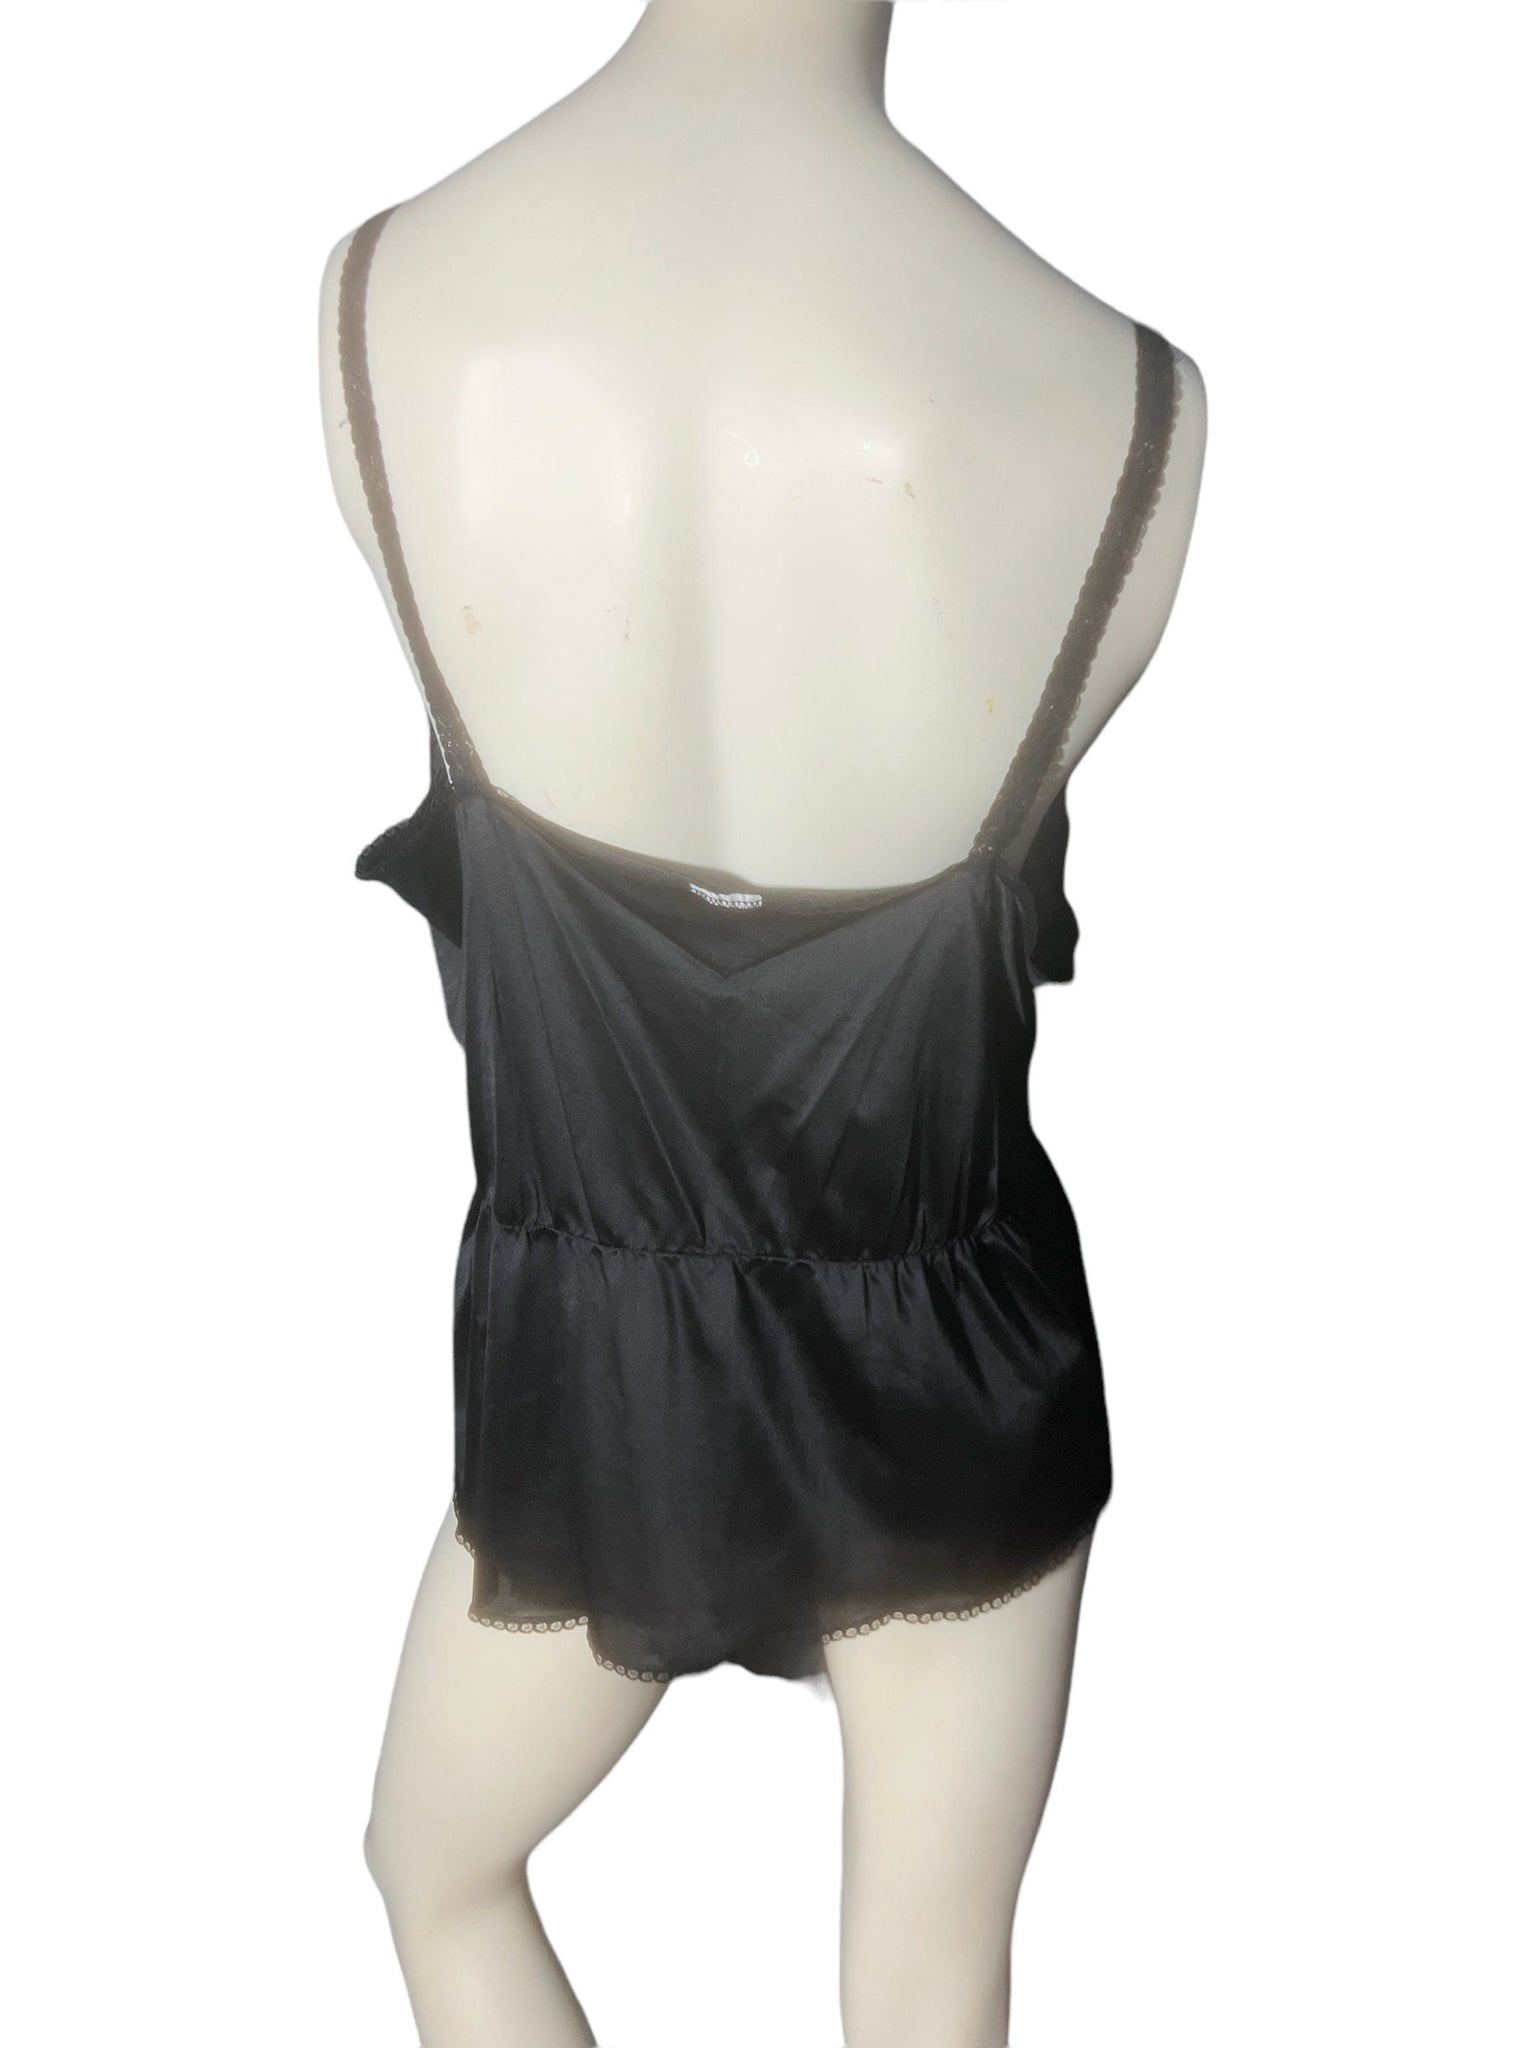 Vintage black camisole lingerie top L XL